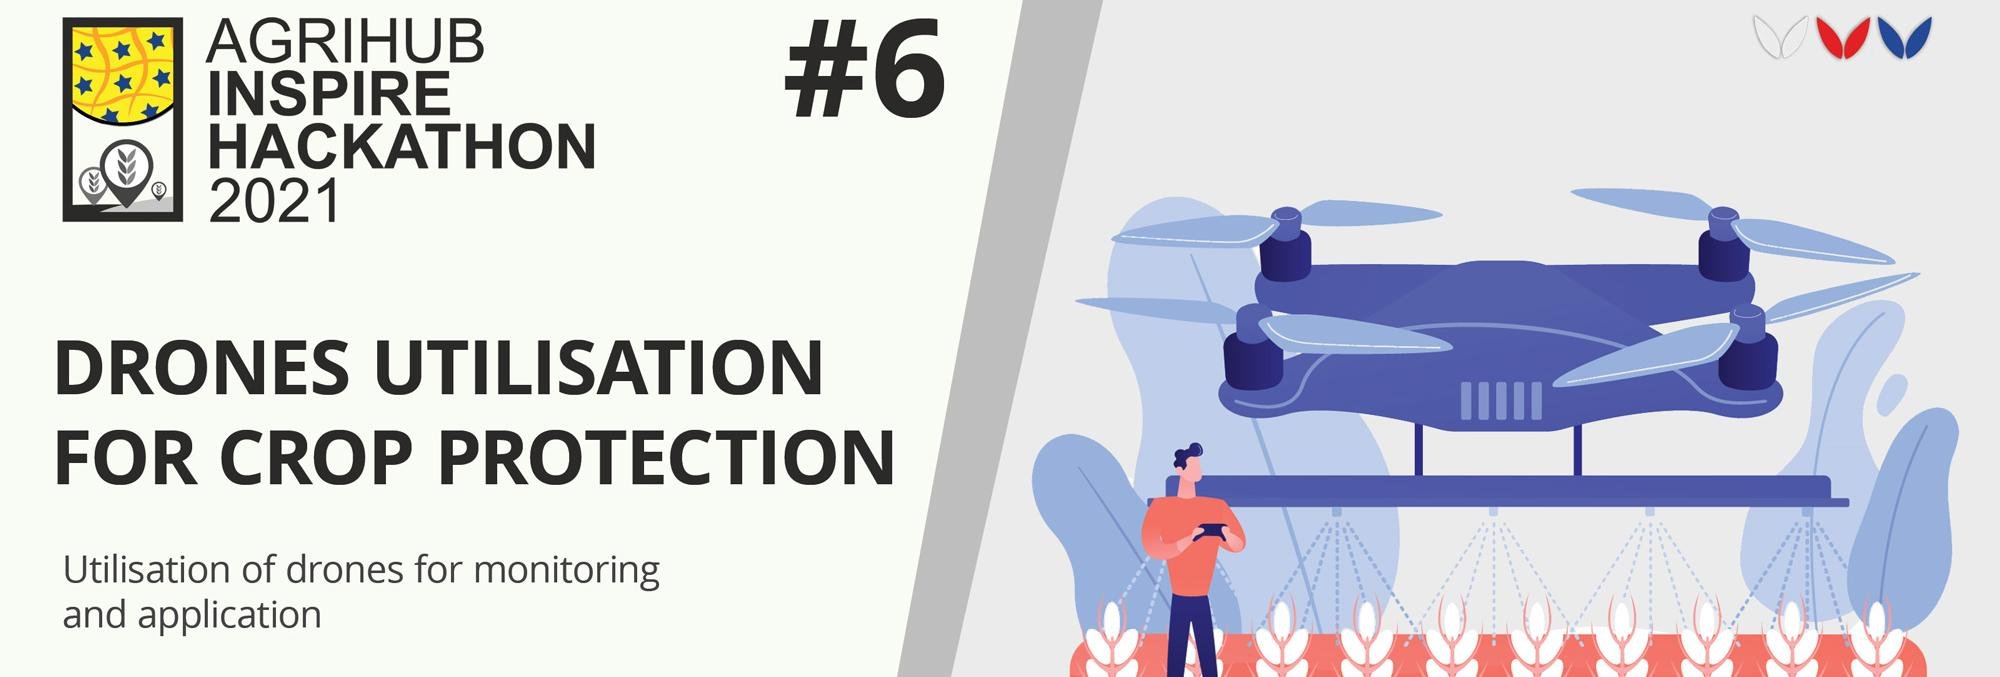 Agrihub INSPIRE Hackathon: Challenge #6 Drones utilisation for crop protection